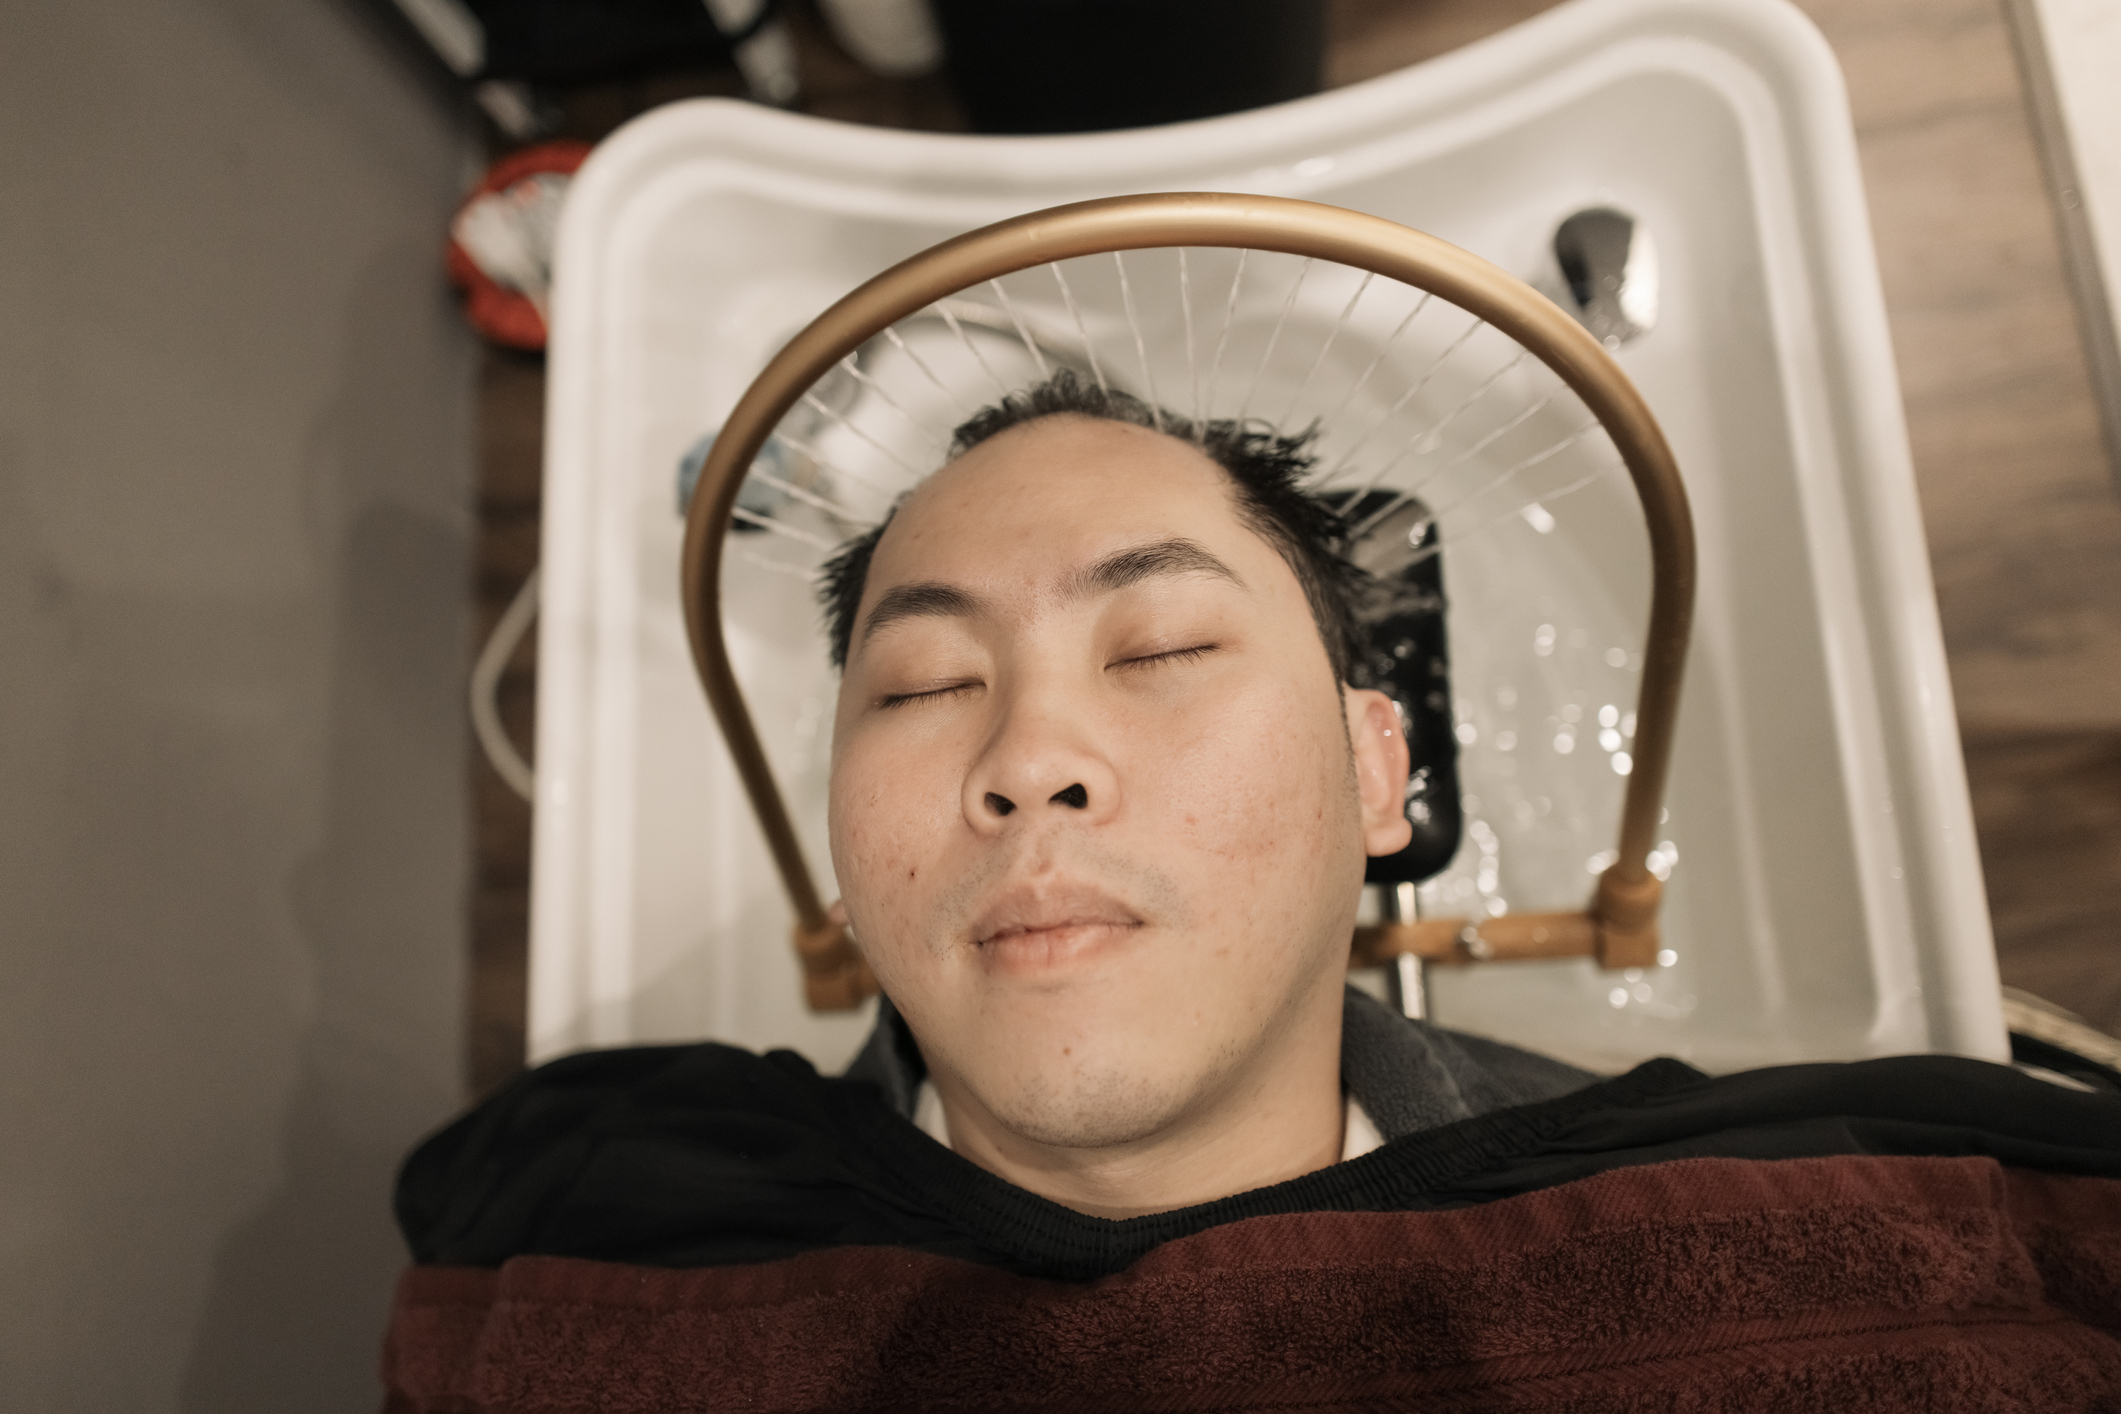 A man is receiving a scalp massage treatment